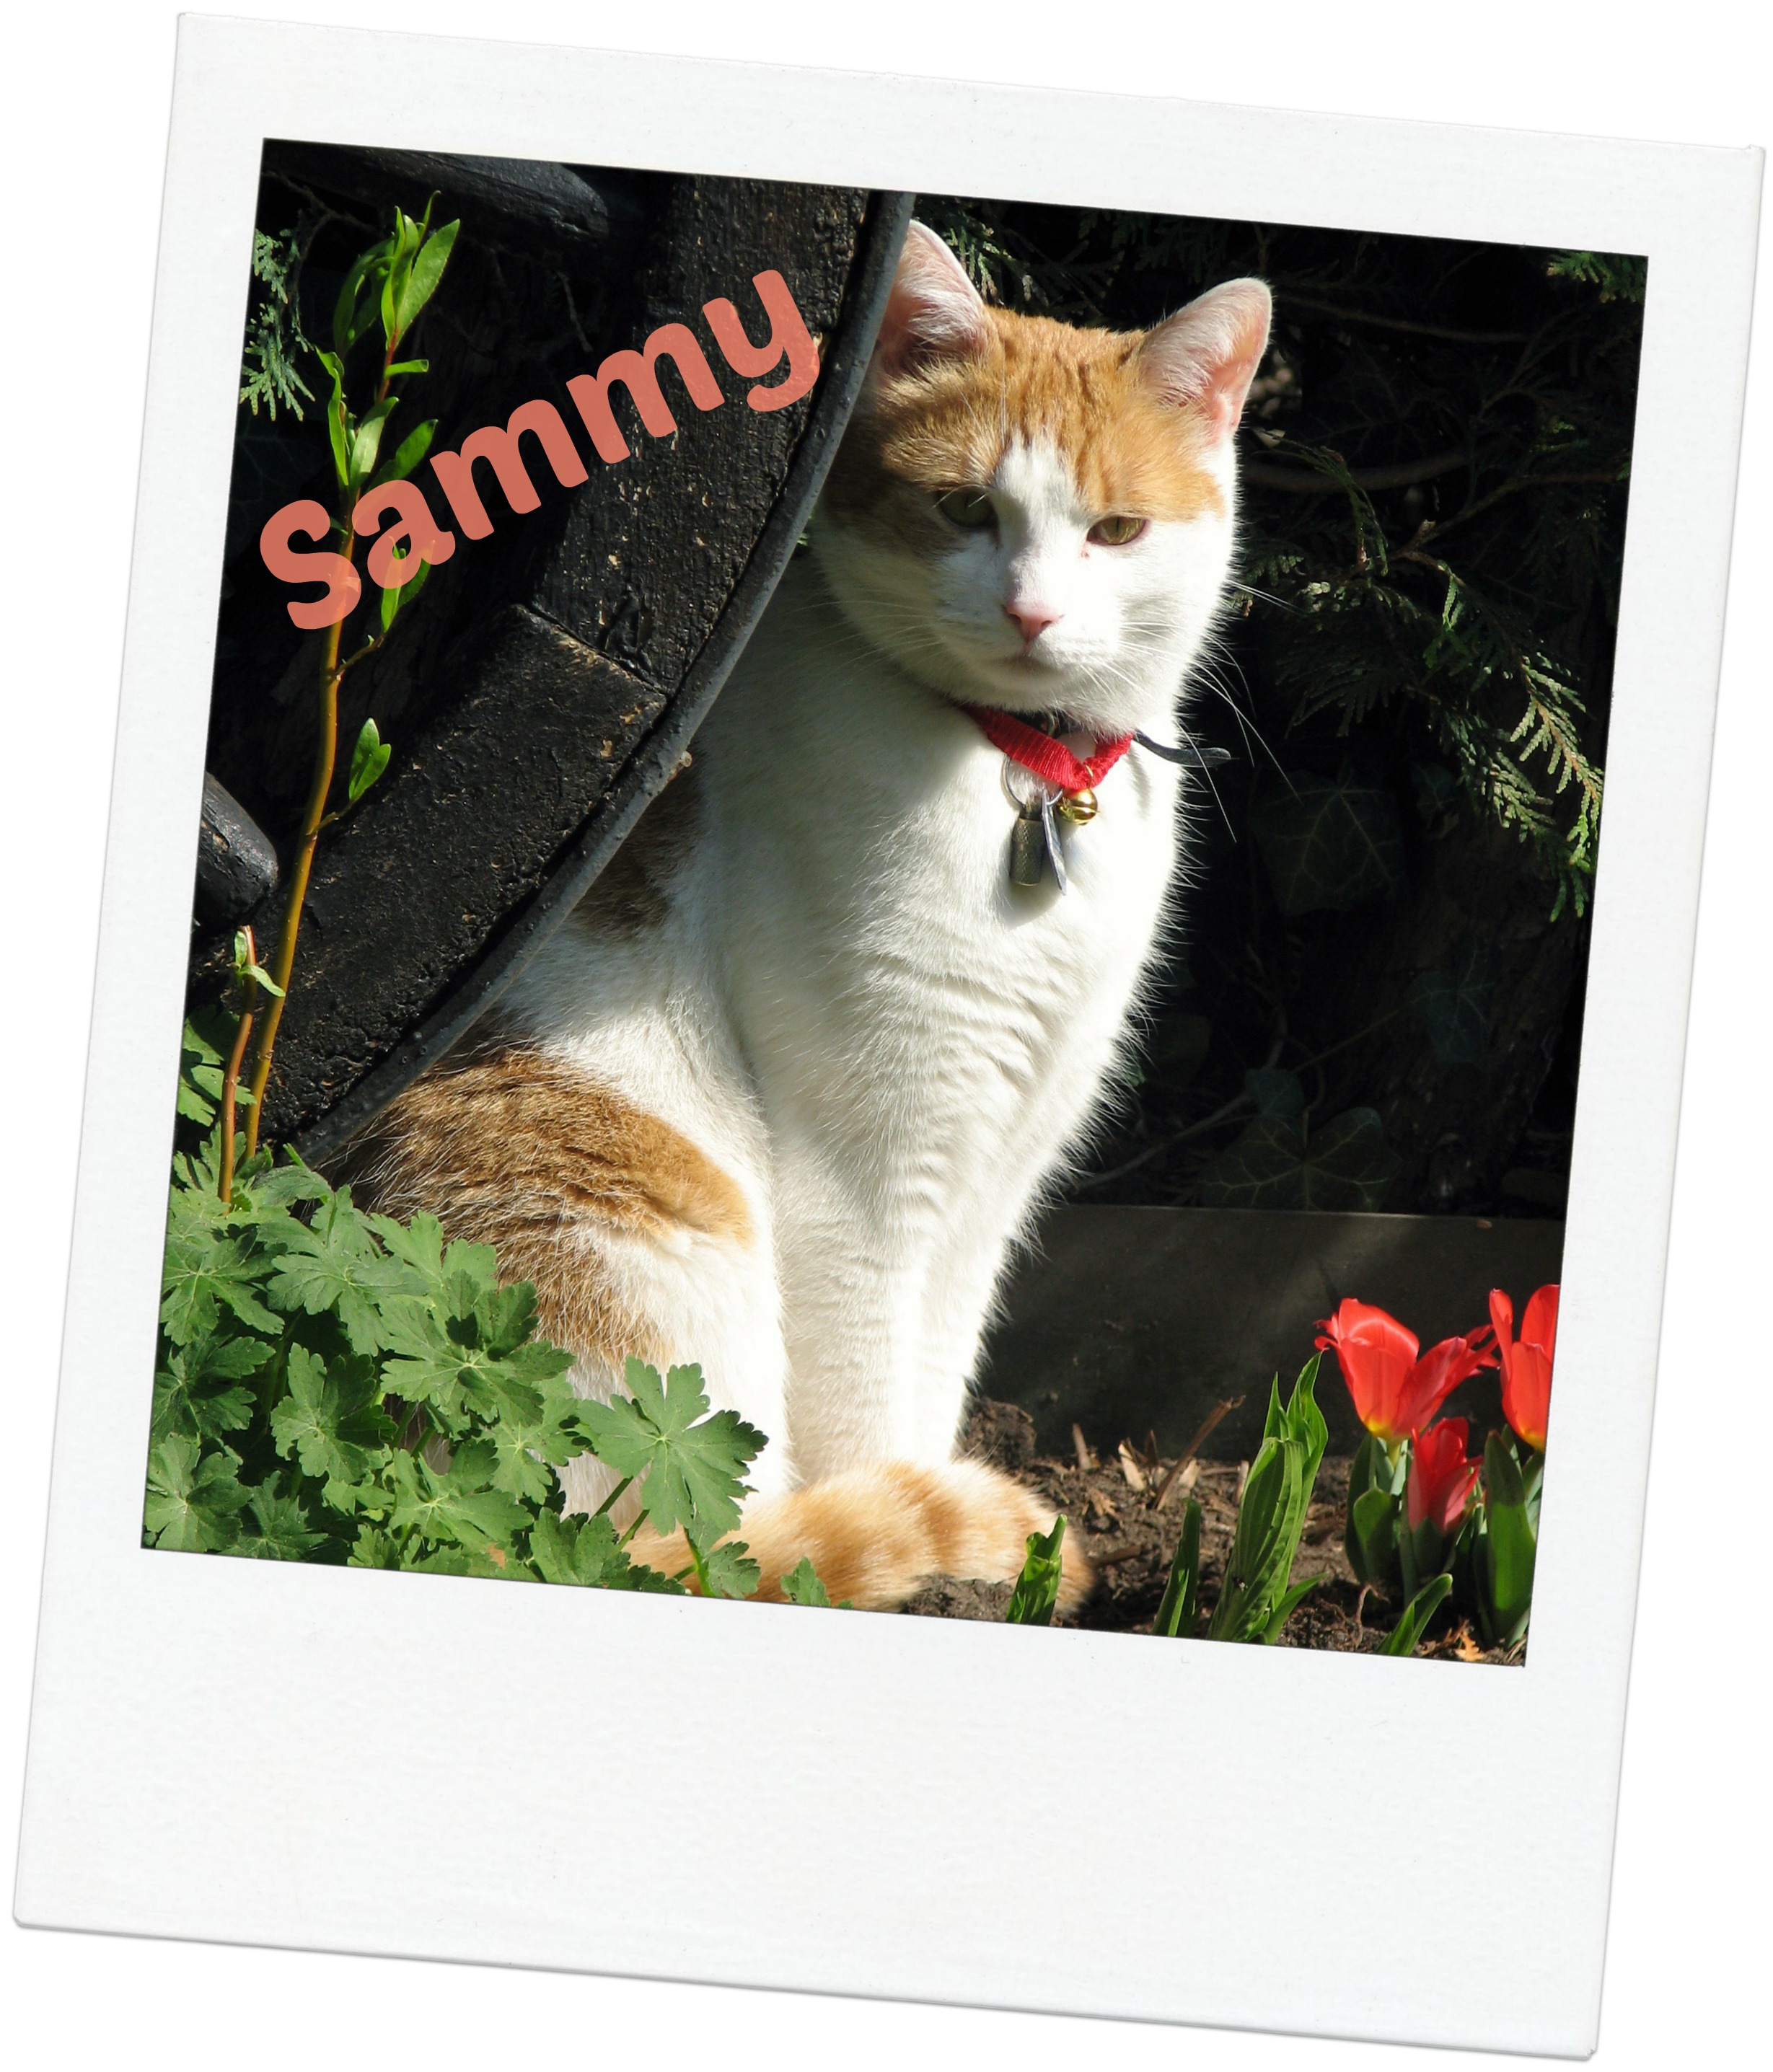 Sammy blog